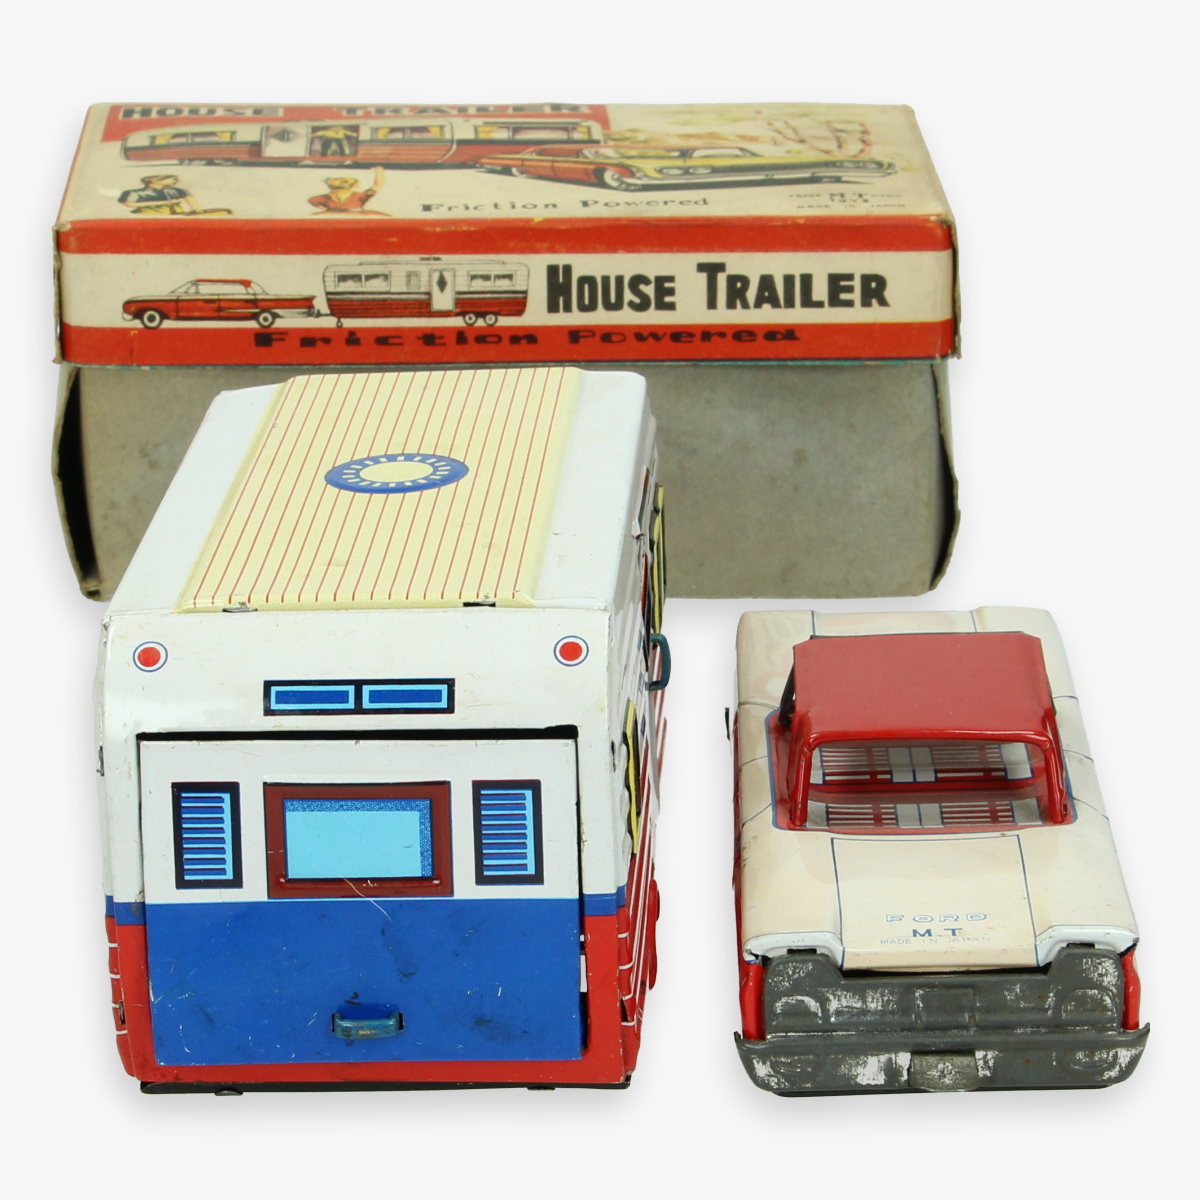 Afbeeldingen van tin toy friction powered . jaren 50 ''housetrailer'' made in japan masudaya zeer zeldzaam